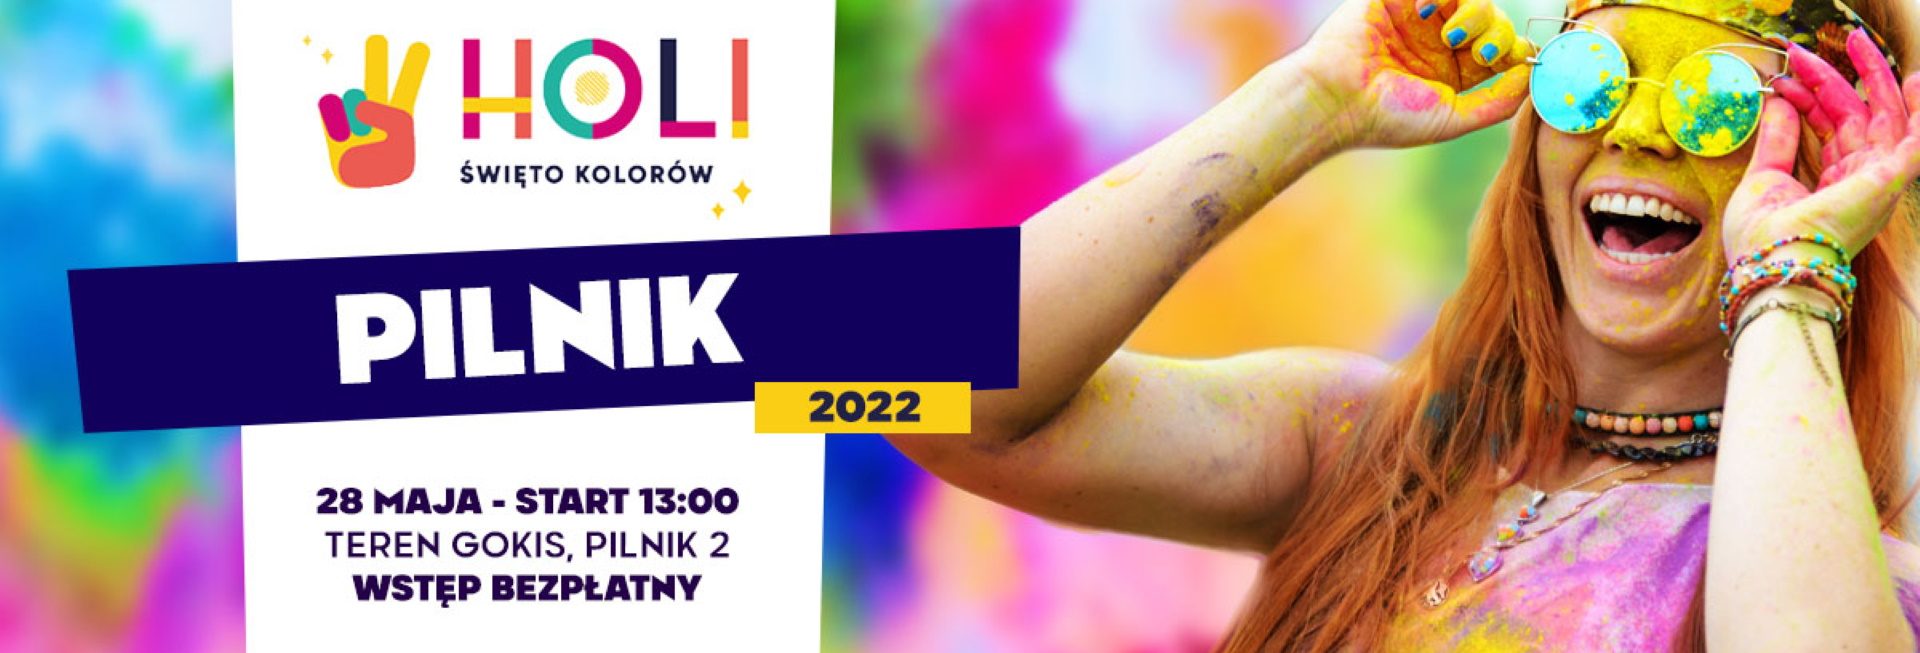 Plakat graficzny zapraszający do miejscowości Pilnik koło Lidzbarka Warmińskiego na Holi Święto Kolorów w Pilniku 2022.